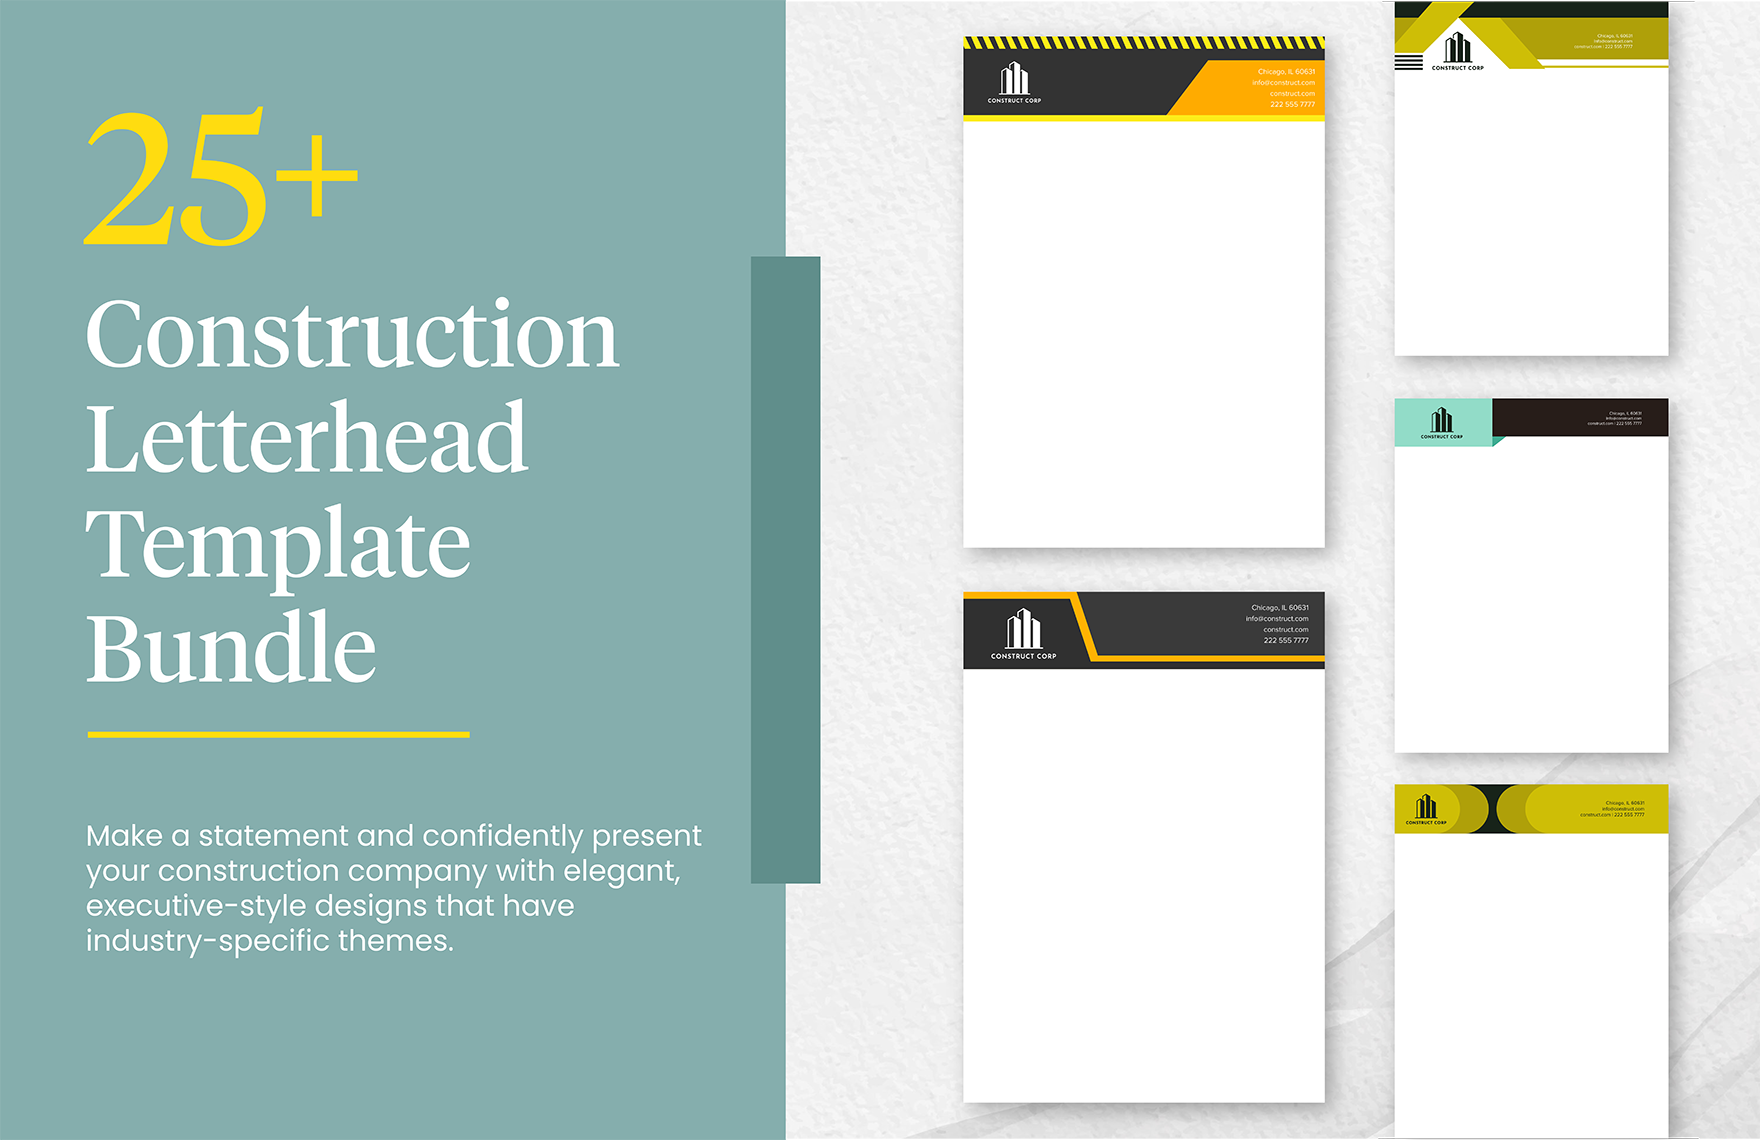 25+ Construction Letterhead Template Bundle